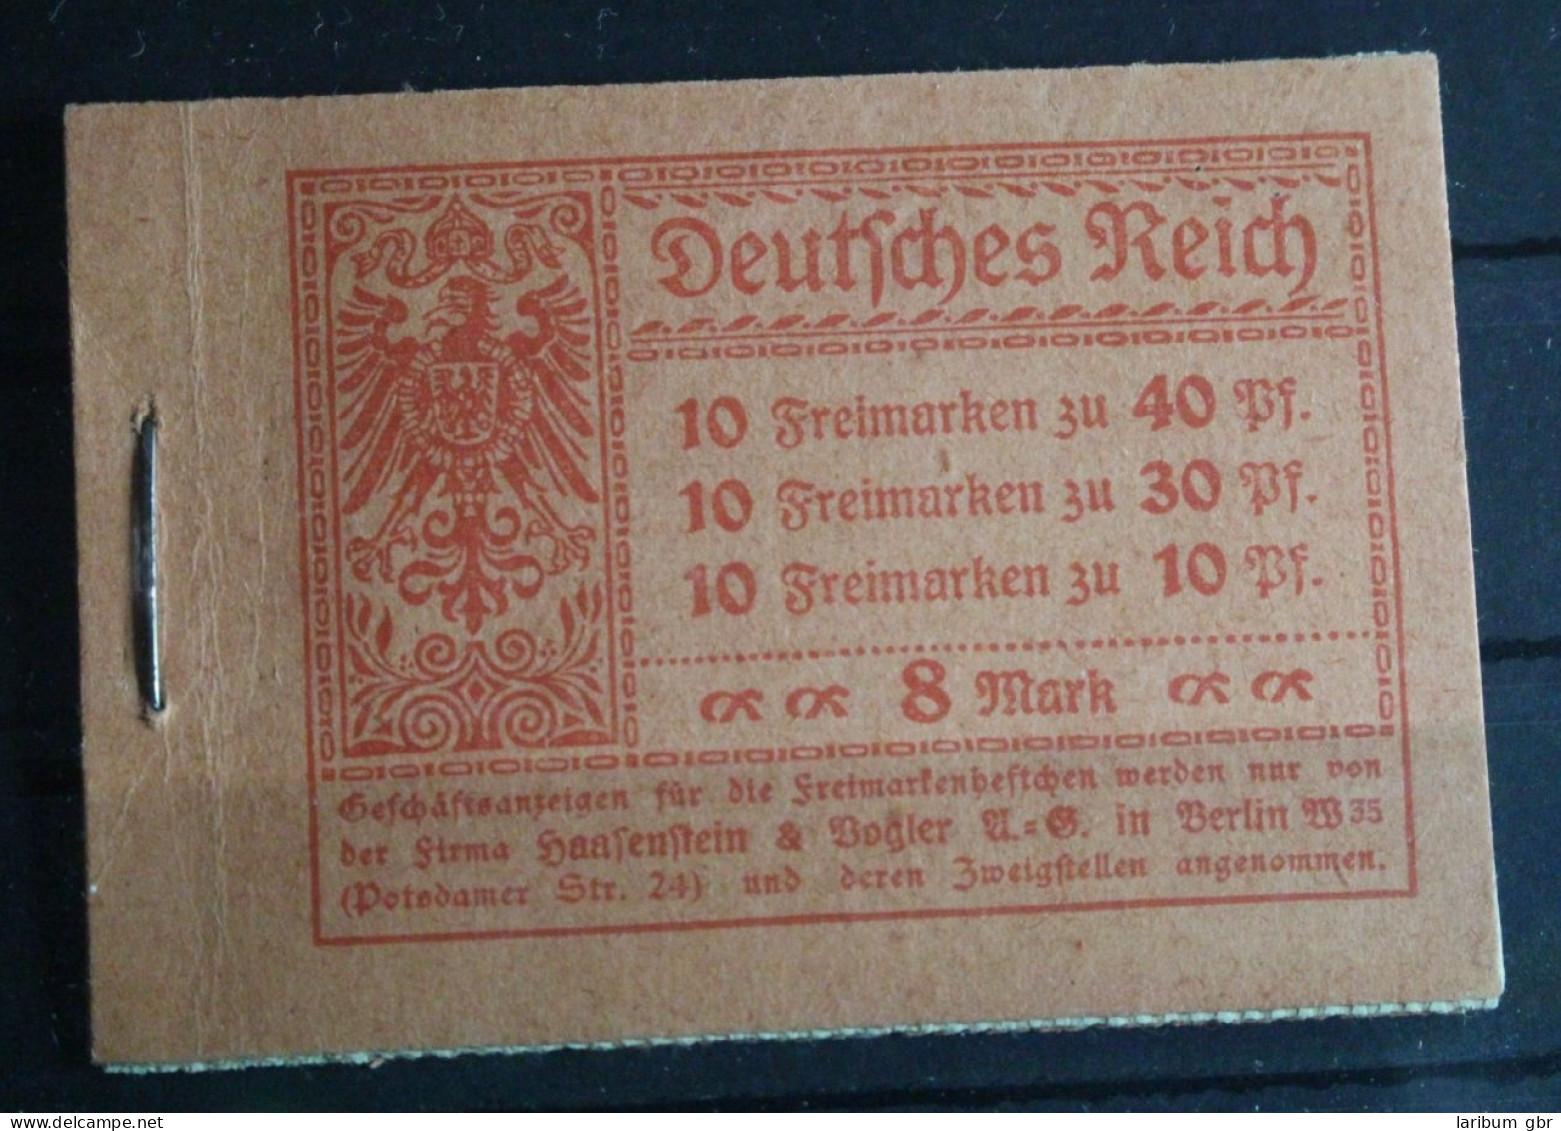 Deutsches Reich MH 14.2A Postfrisch Markenheftchen #FL095 - Booklets